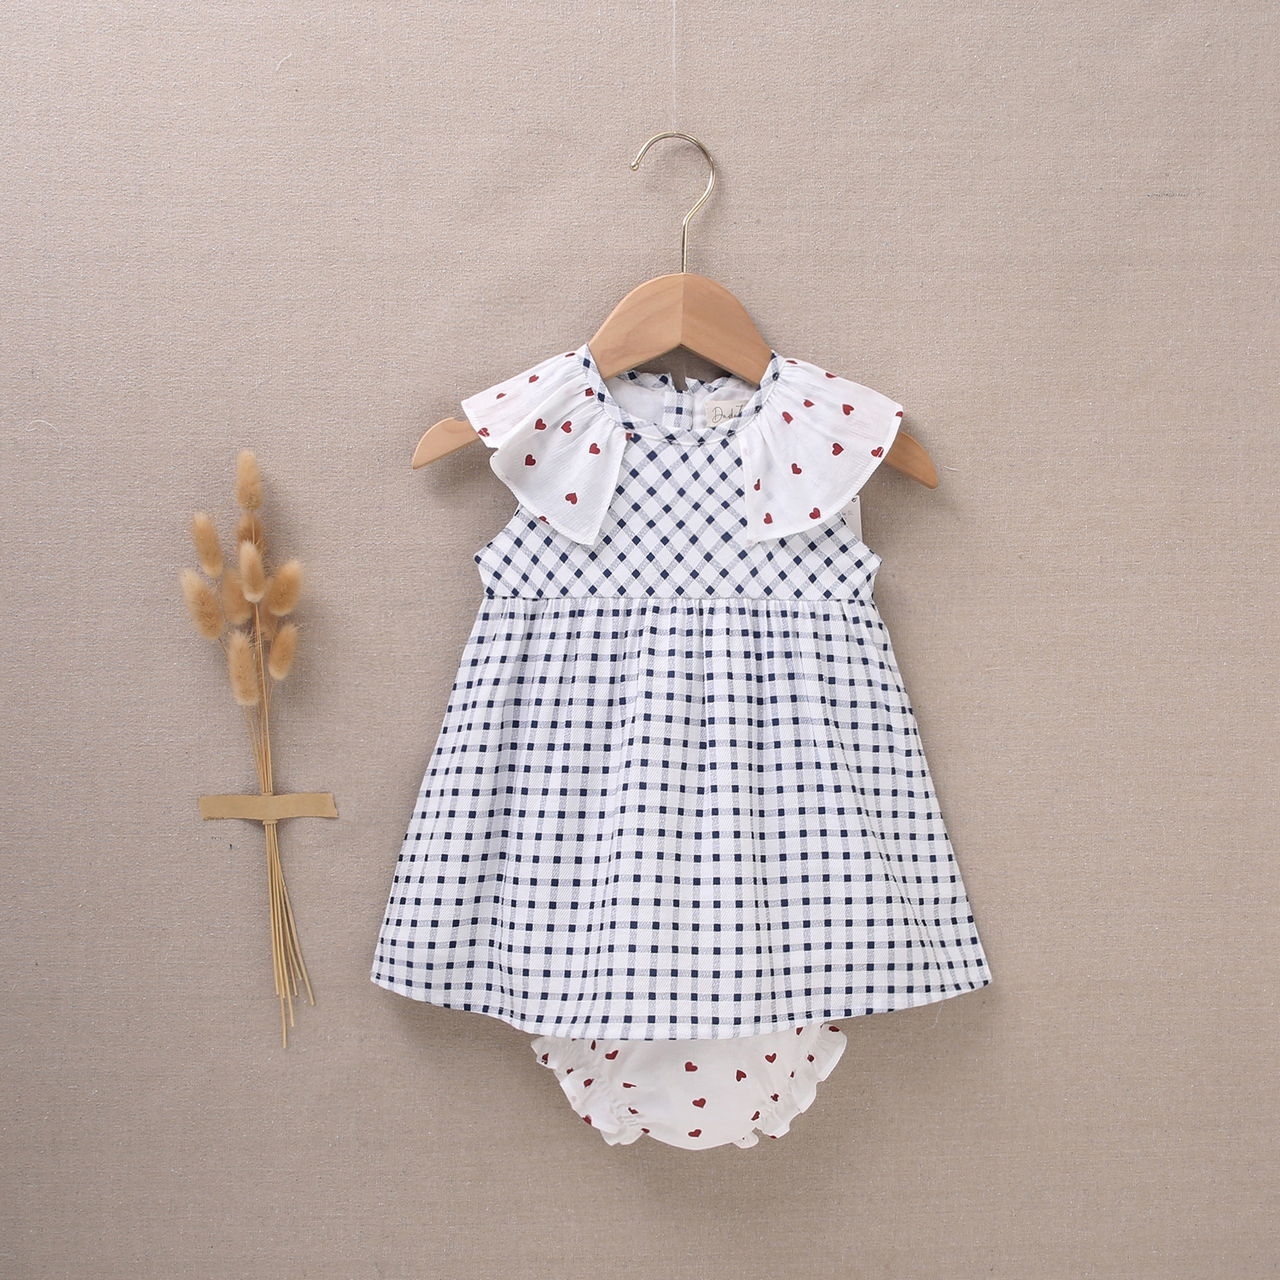 Imagen de Vestido de bebé niña con cubrepañal de cuadros blancos y azul marino con volantes con corazones